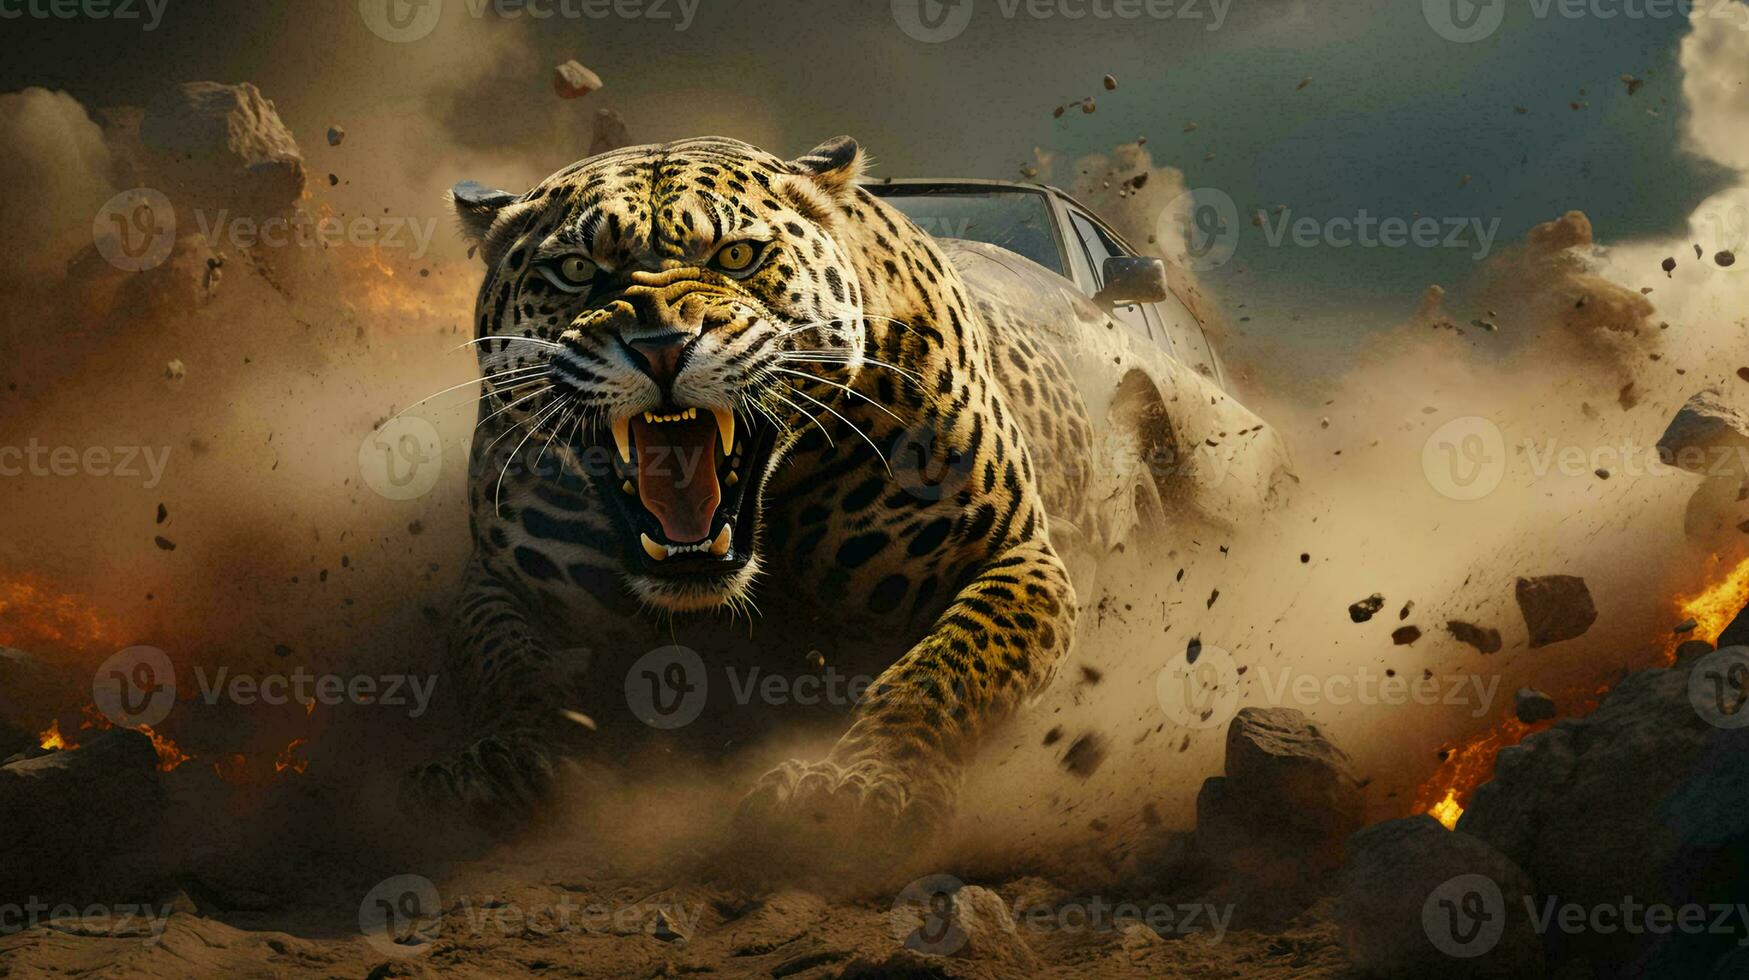 corriendo resumen Tigre con abierto boca en barro y polvo foto